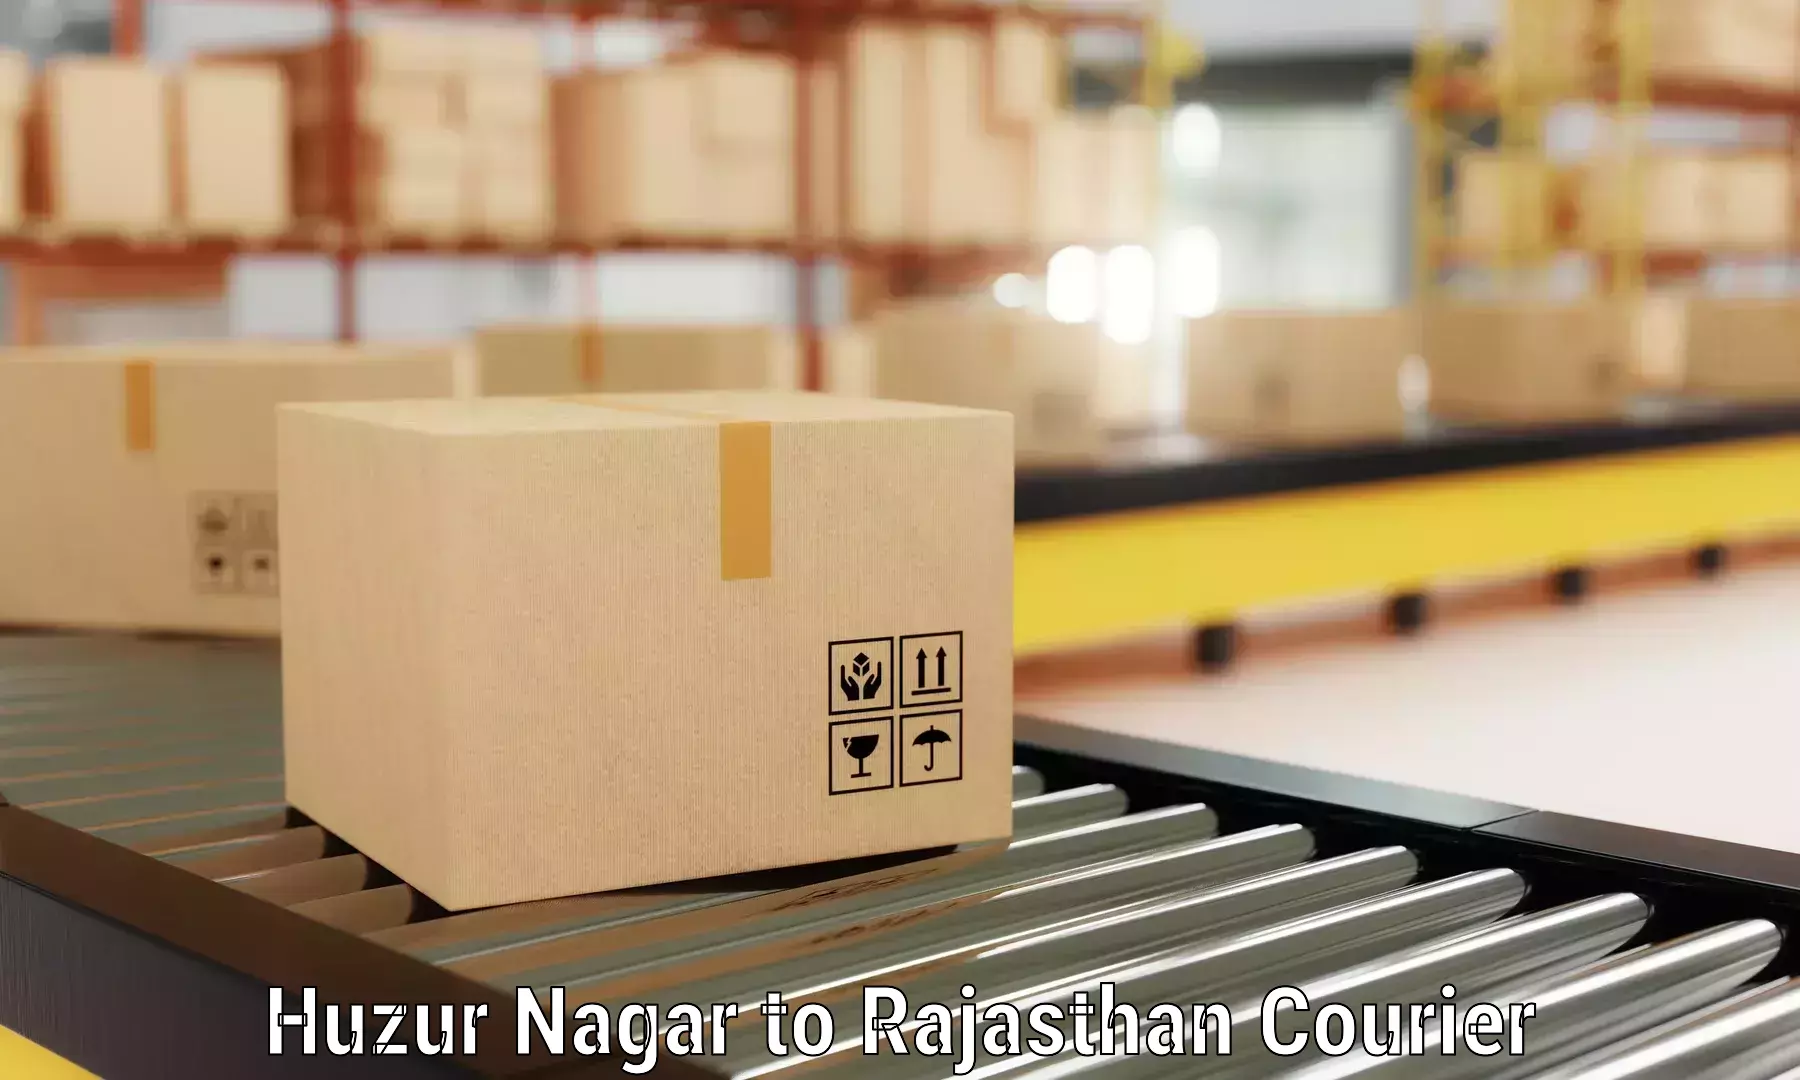 Professional movers and packers Huzur Nagar to Ratangarh Churu